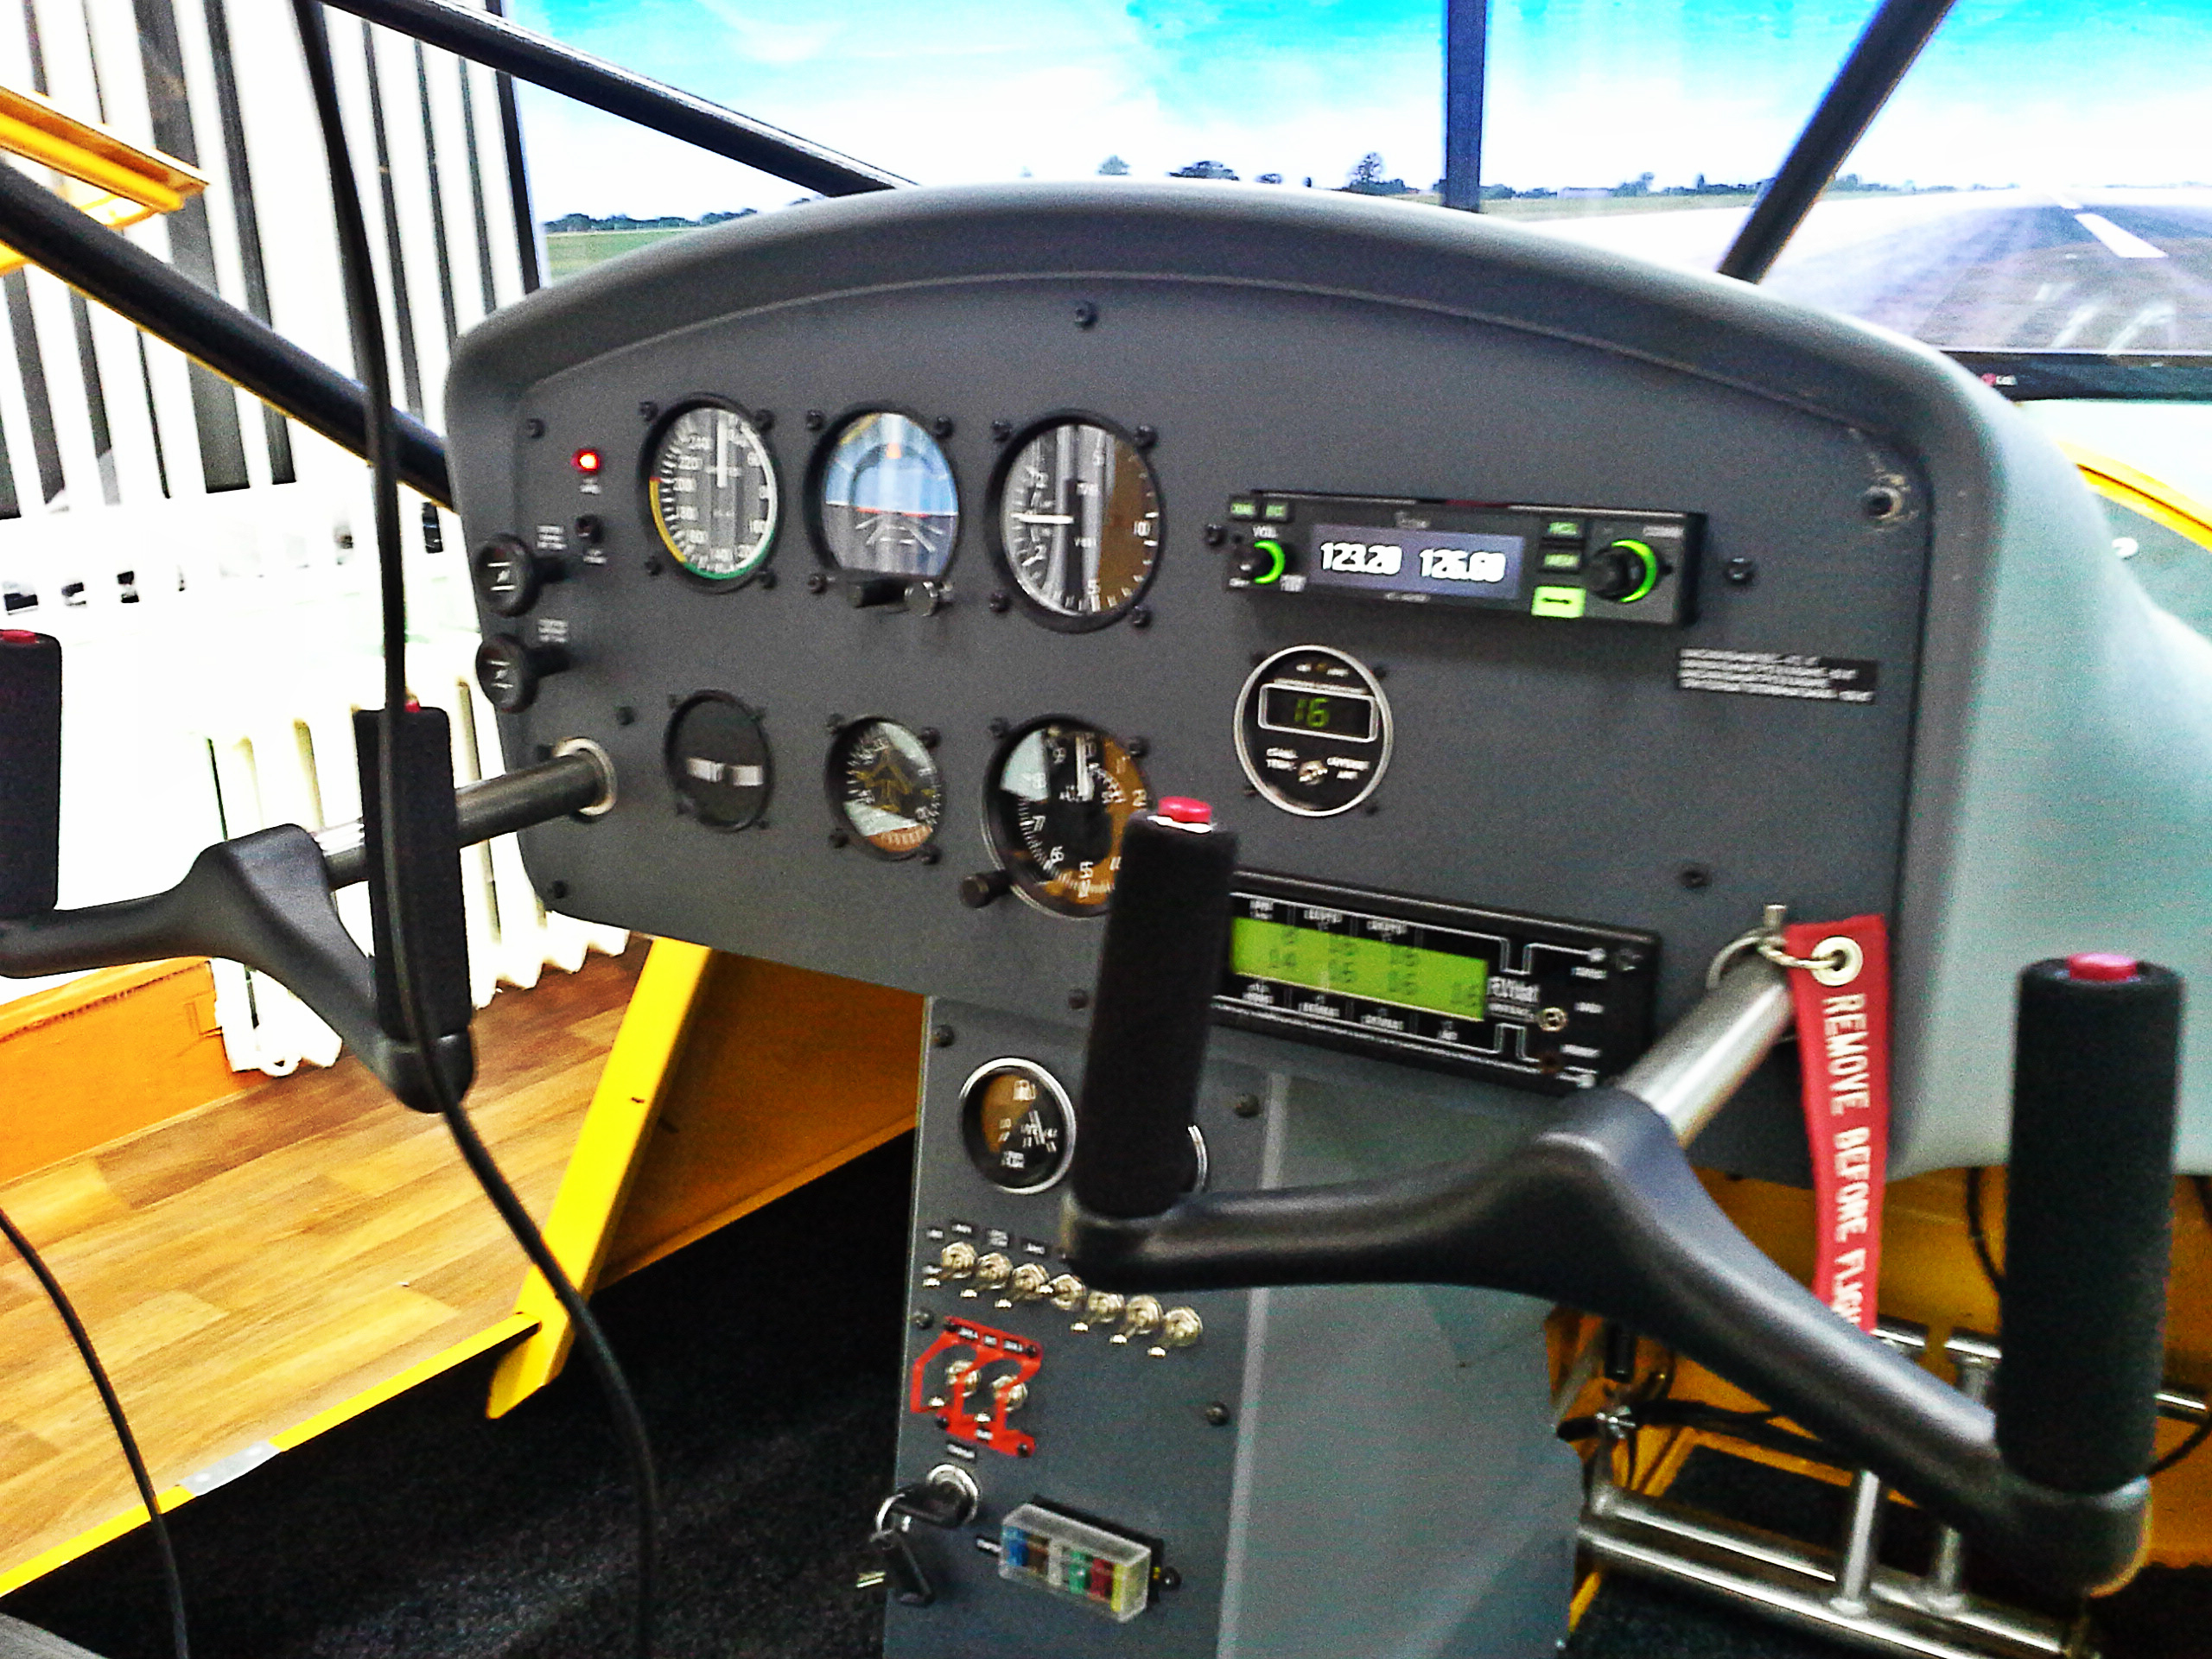 Aeroprakt-22 ultralight aircraft flight simulator instrumental panel